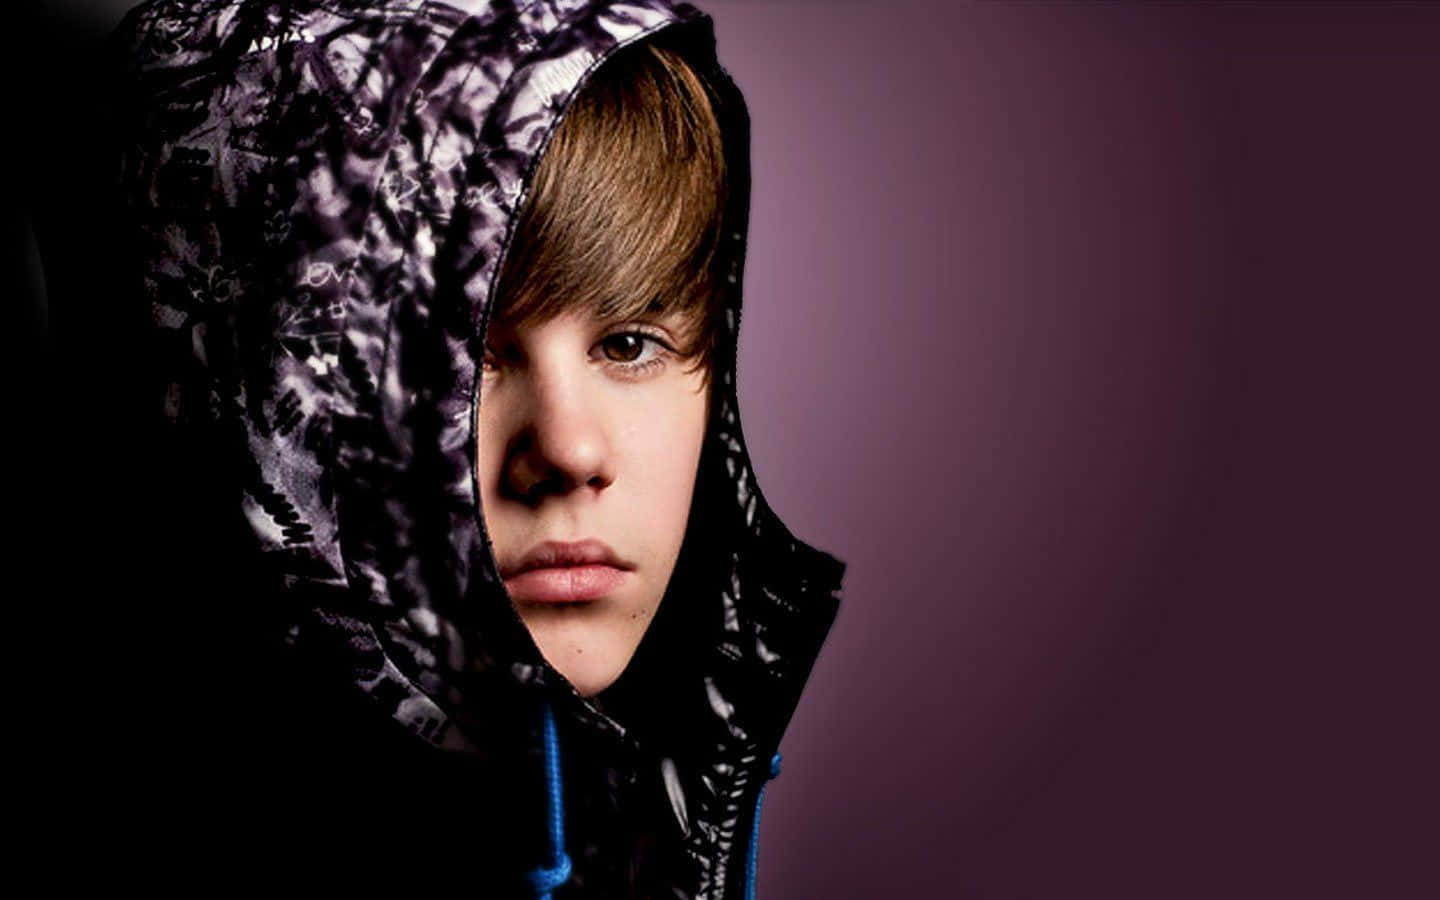 Pop superstar Justin Bieber